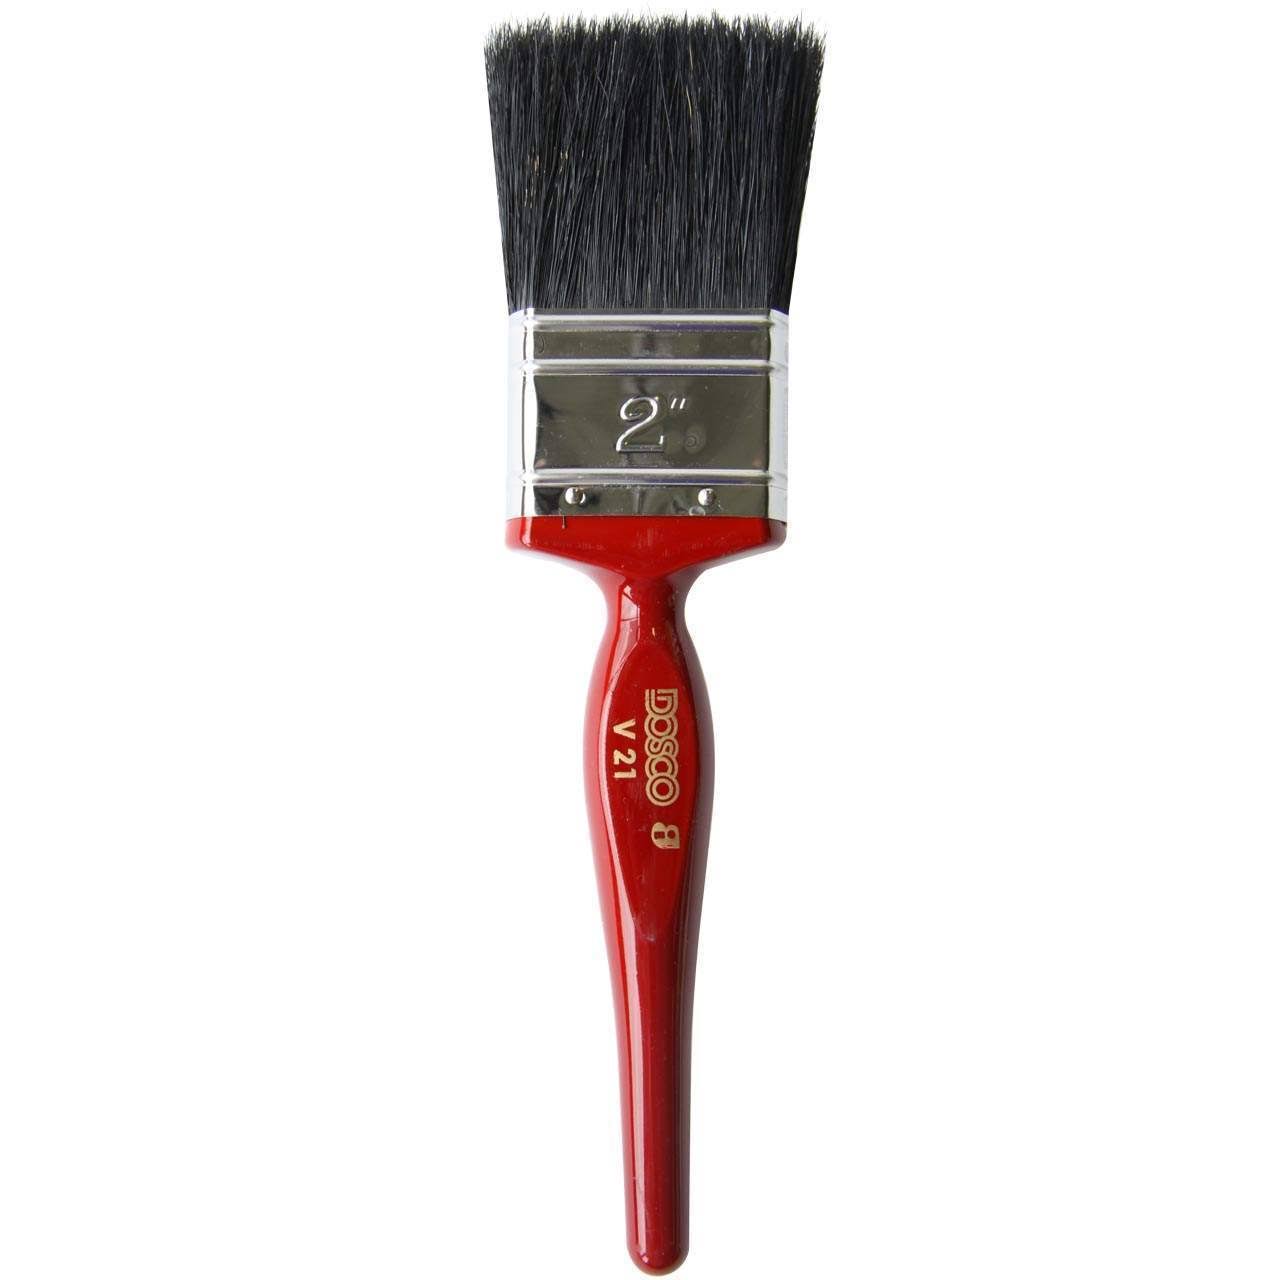 Dosco V21 Paint Brush - 1"